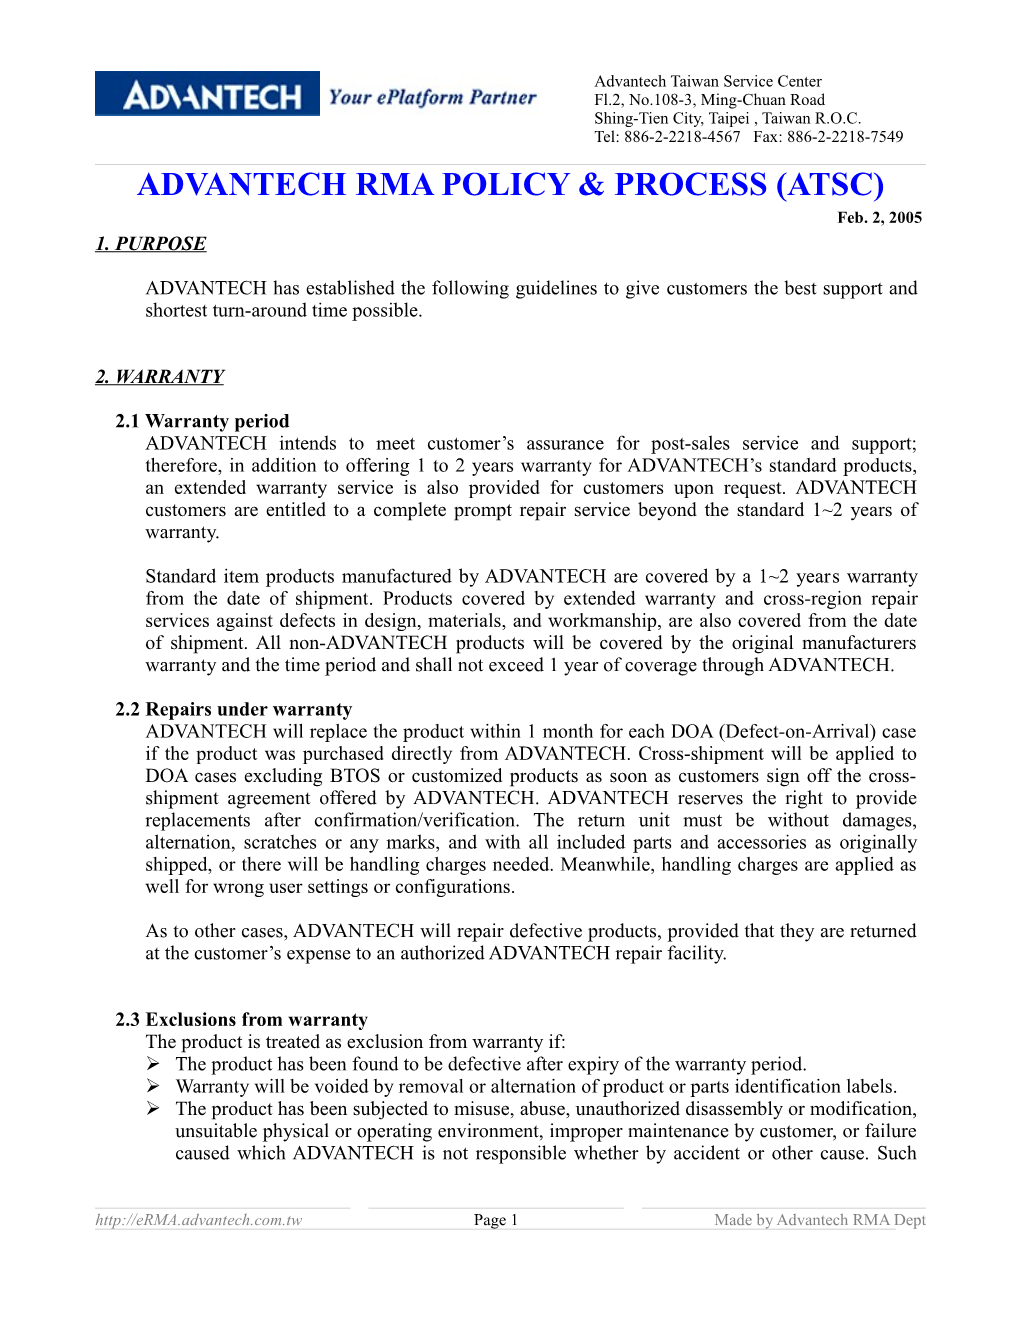 Advantech RMA Policy and Process